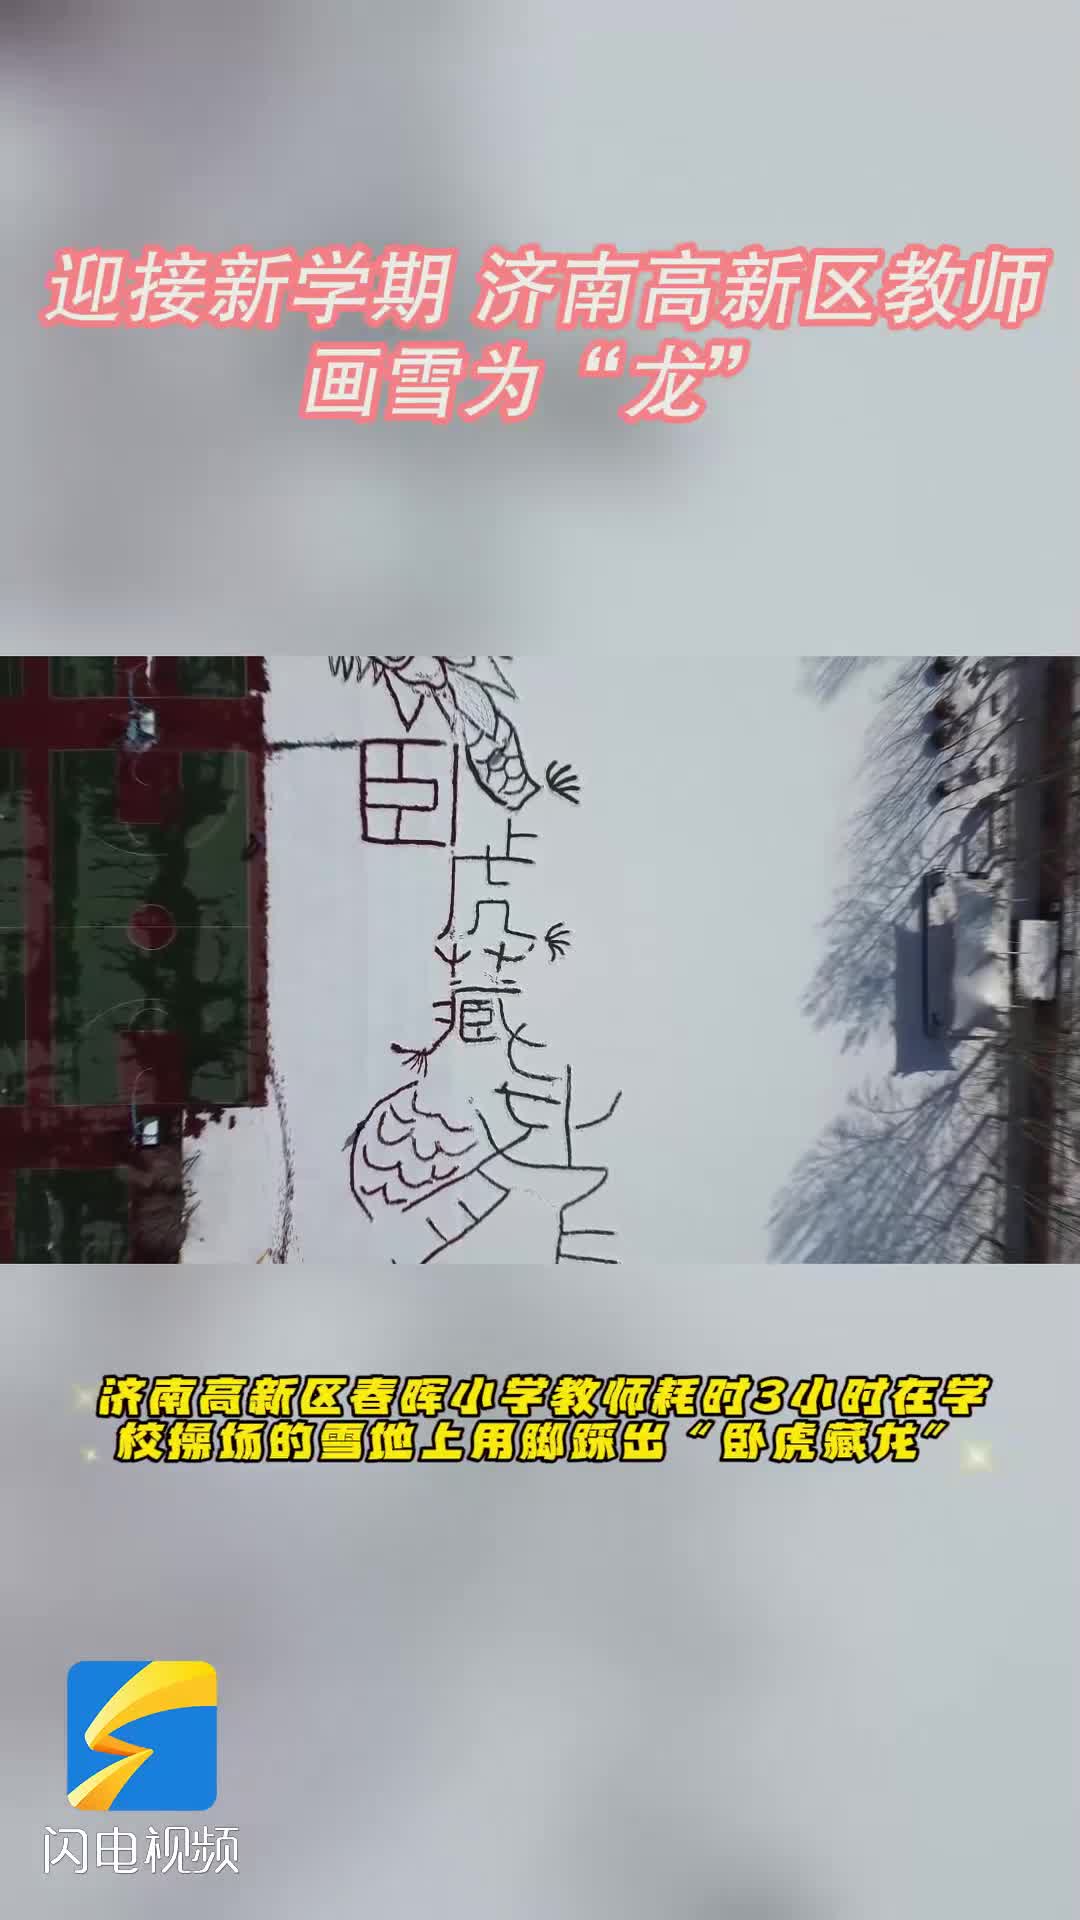 济南高新区：以脚为笔 画雪为“龙”